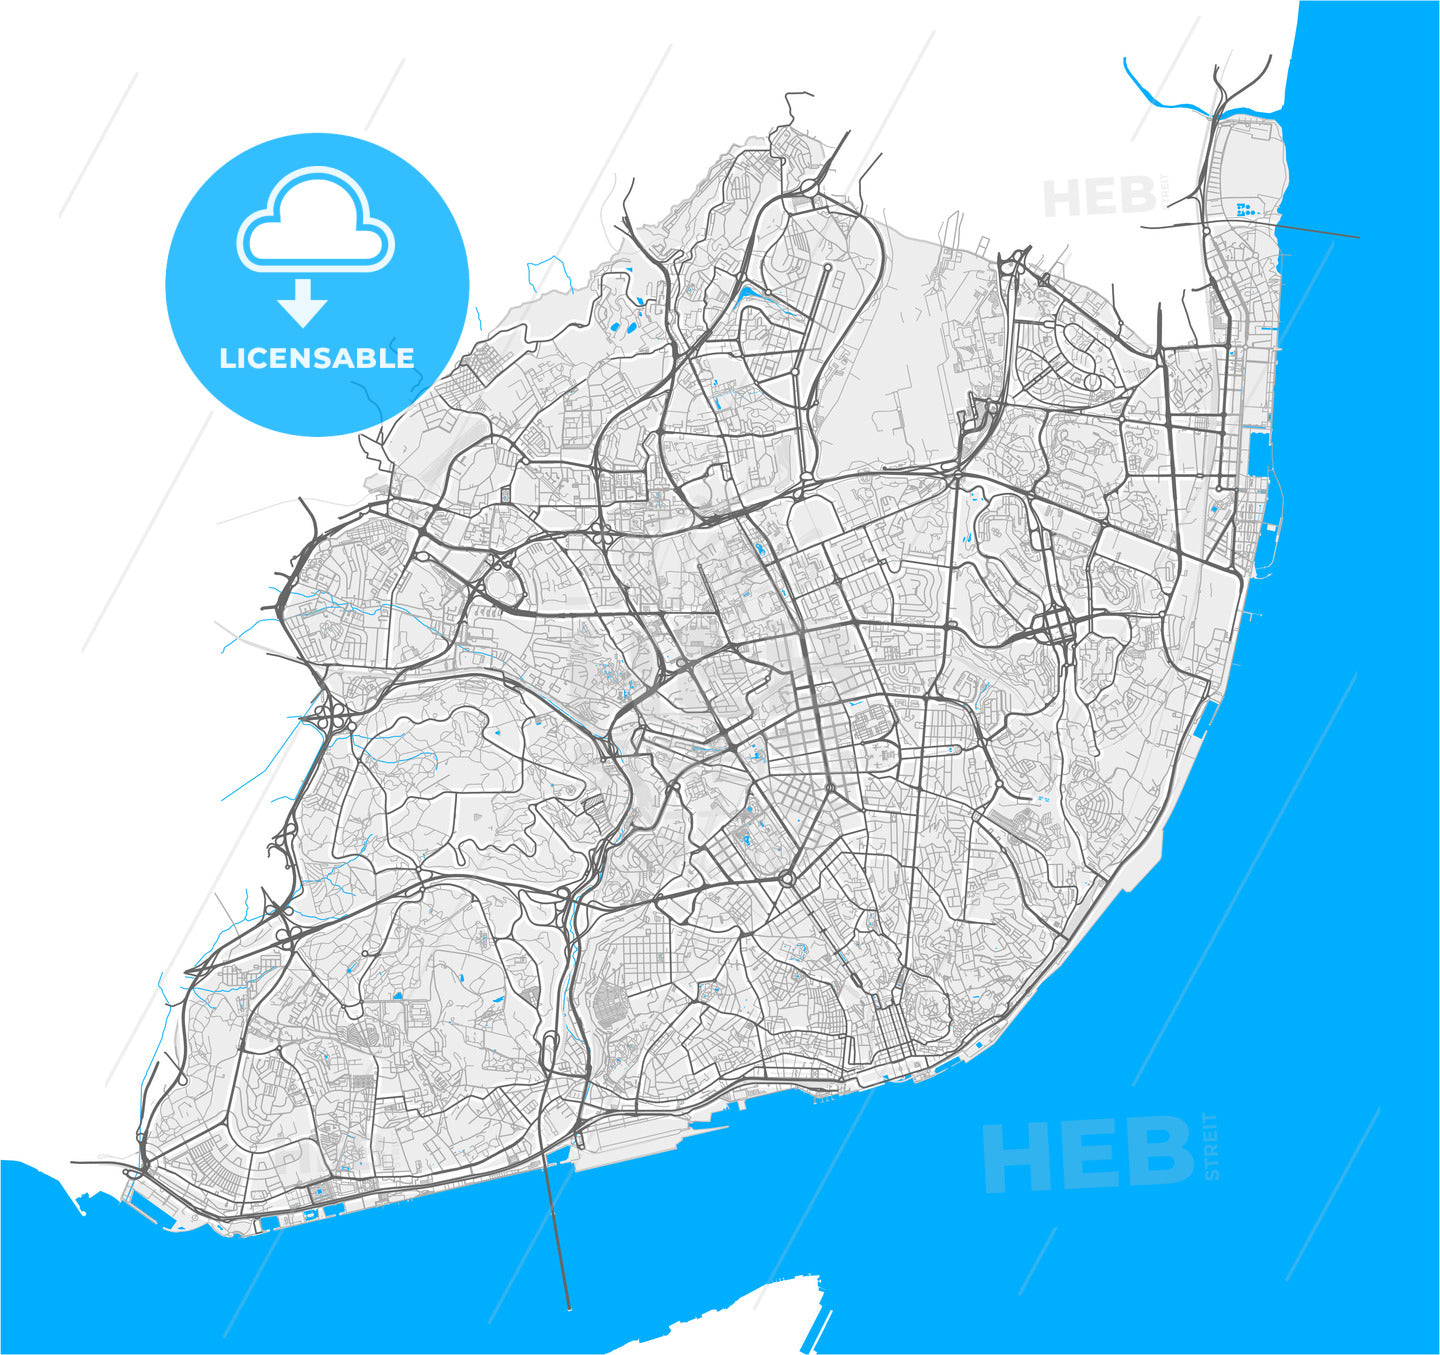 Lisbon, Lisbon, Portugal, high quality vector map